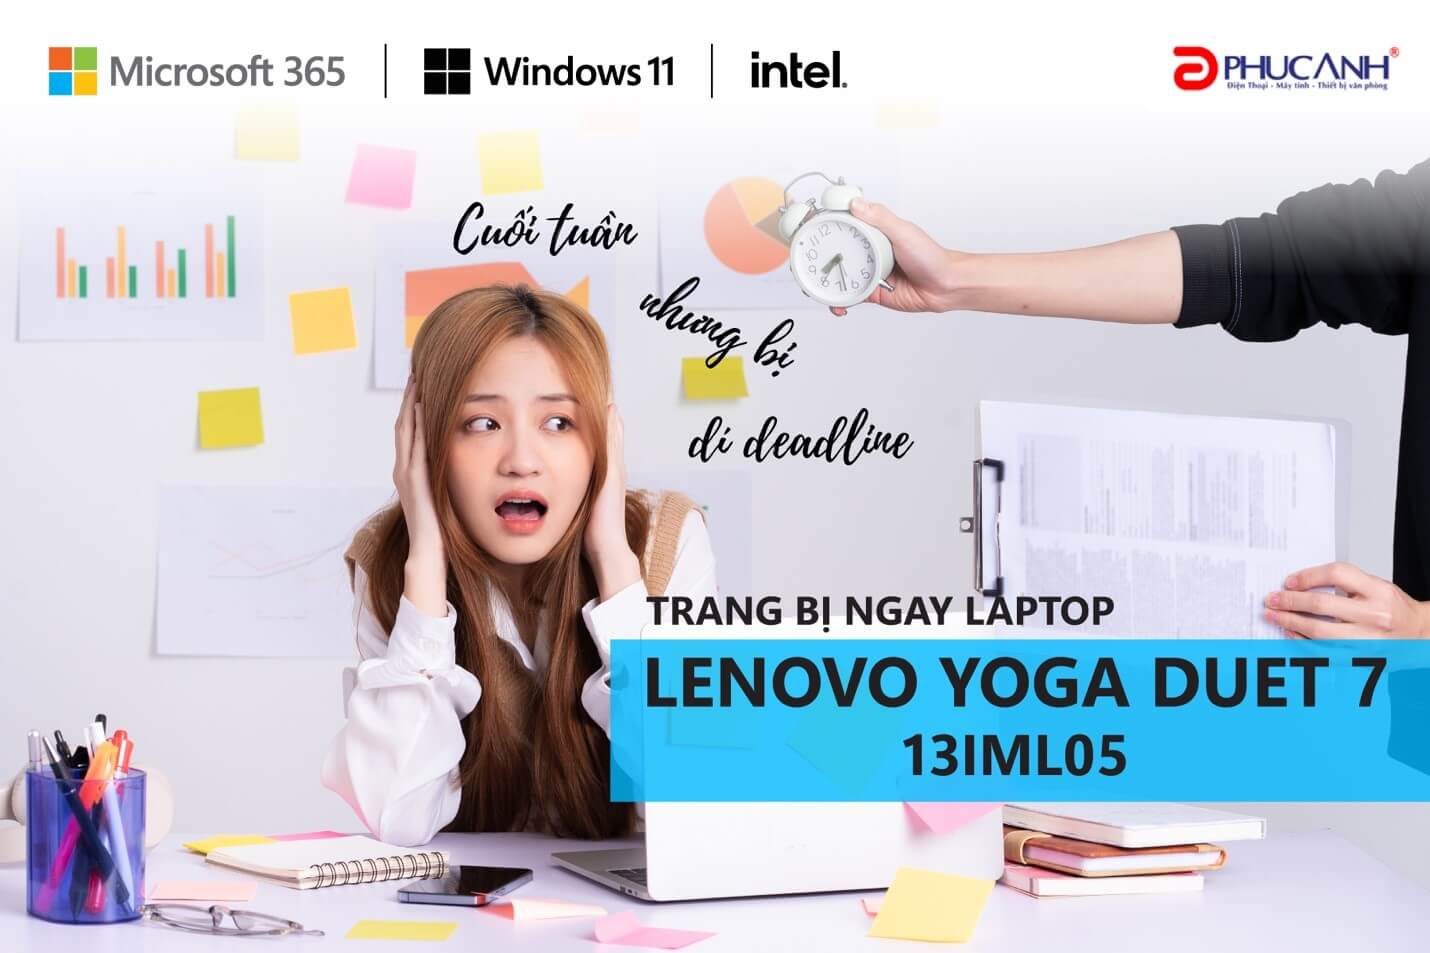 Laptop Lenovo Yoga Duet 7 13IML05, cùng Editor mượt mà chiến task